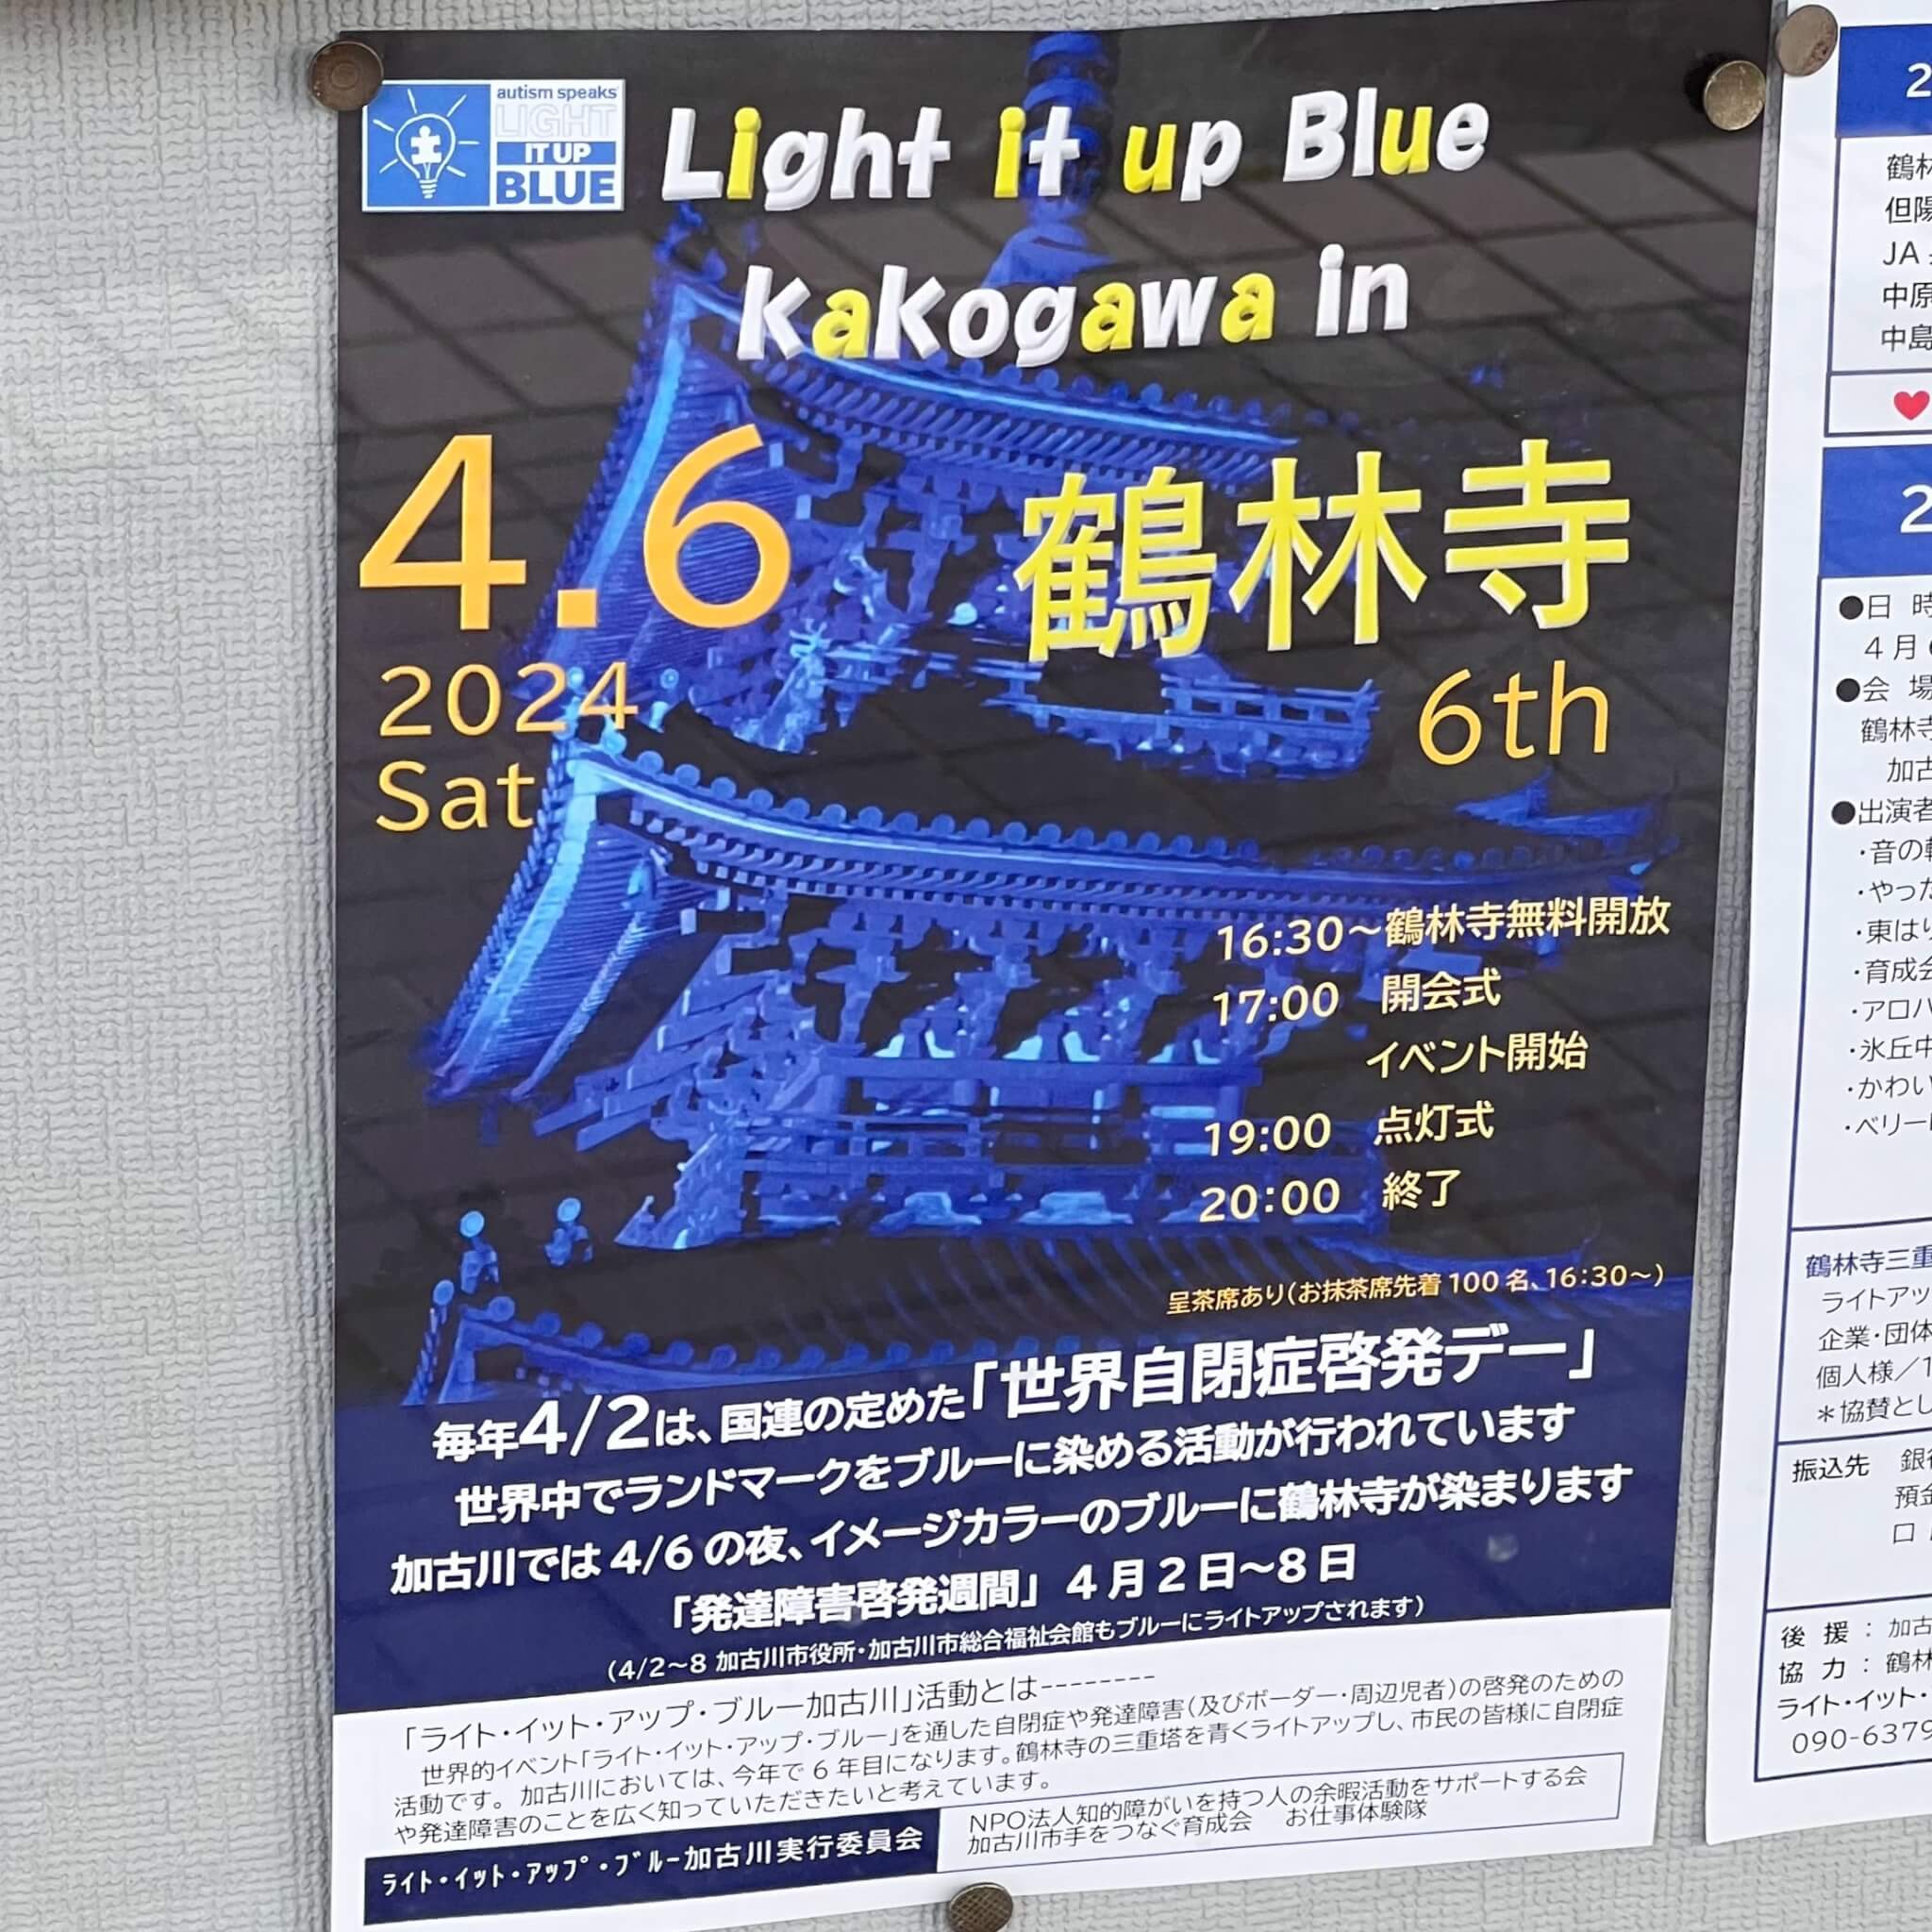 Light it up Blue Kakogawaポスター。2024年3月29日撮影